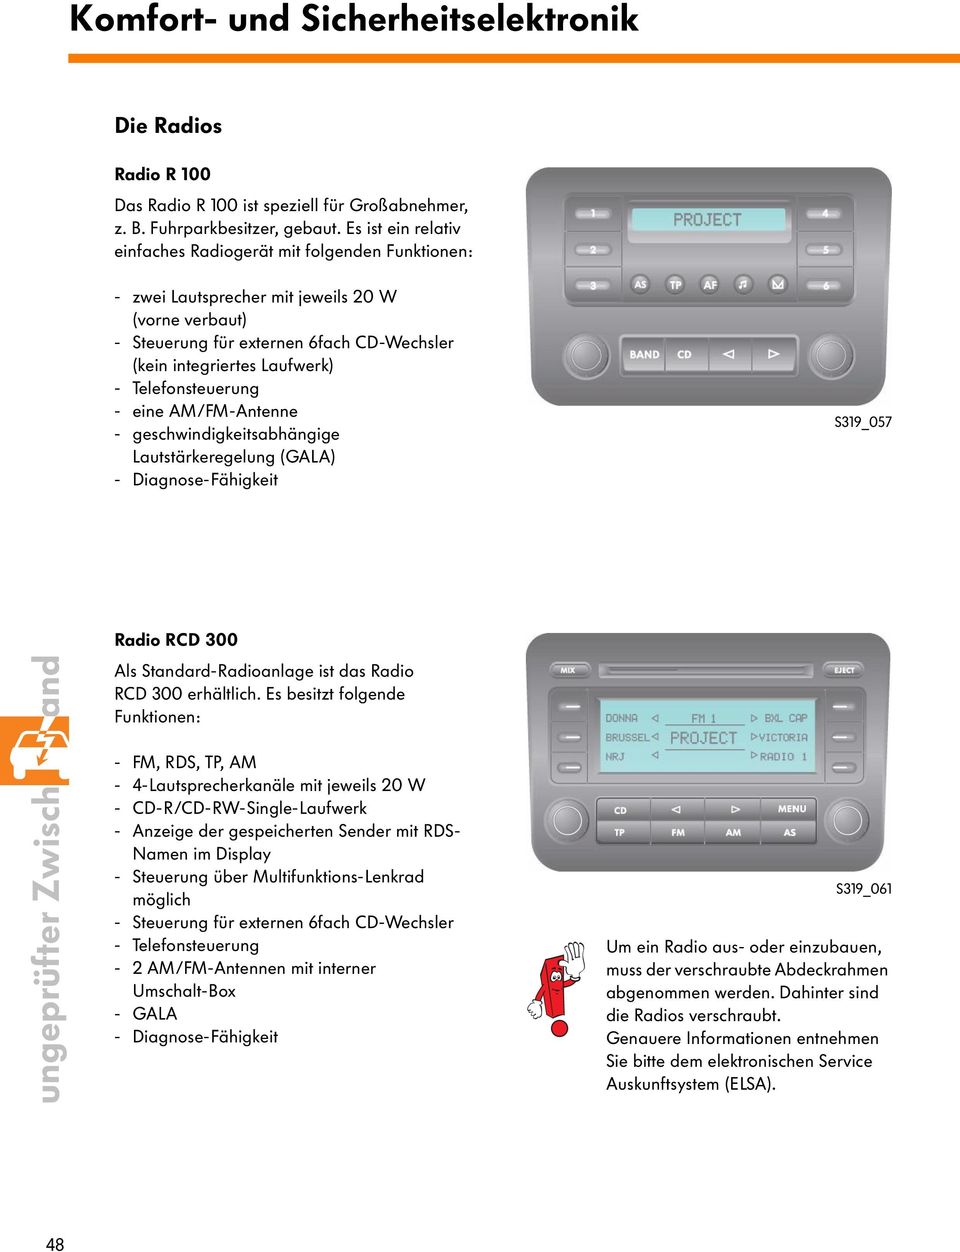 Telefonsteuerung - eine AM/FM-Antenne - geschwindigkeitsabhängige Lautstärkeregelung (GALA) - Diagnose-Fähigkeit S319_057 48ungeprüfter Zwischenstand Radio RCD 300 Als Standard-Radioanlage ist das